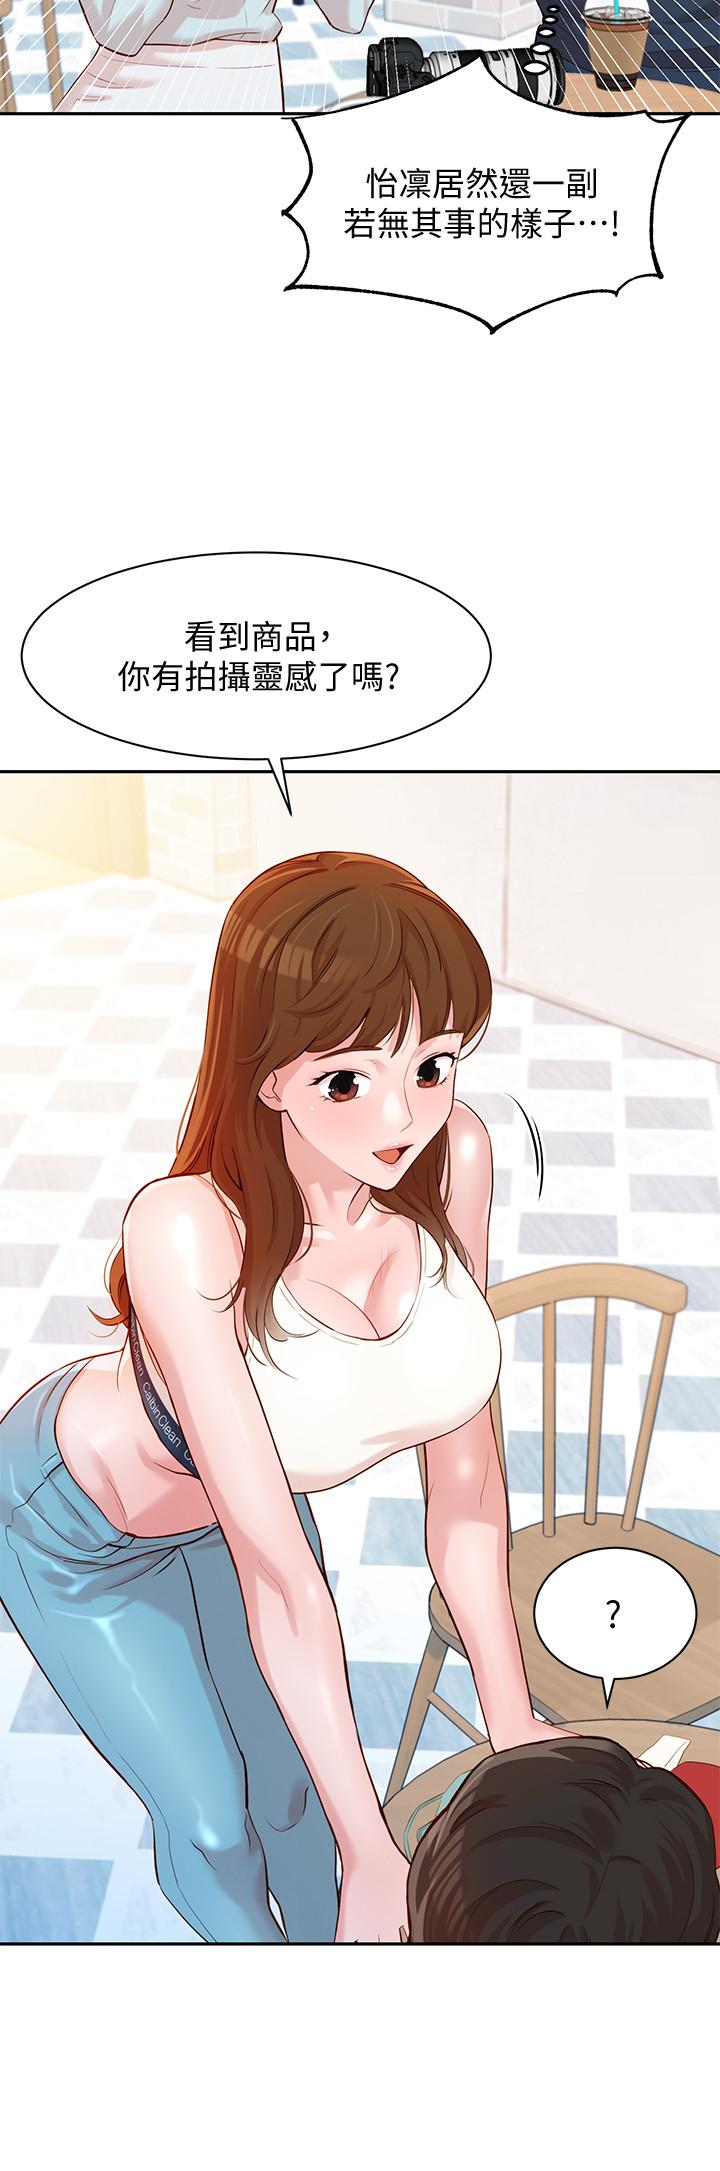 韩国污漫画 女神寫真 第8话-屁股就在眼前 21